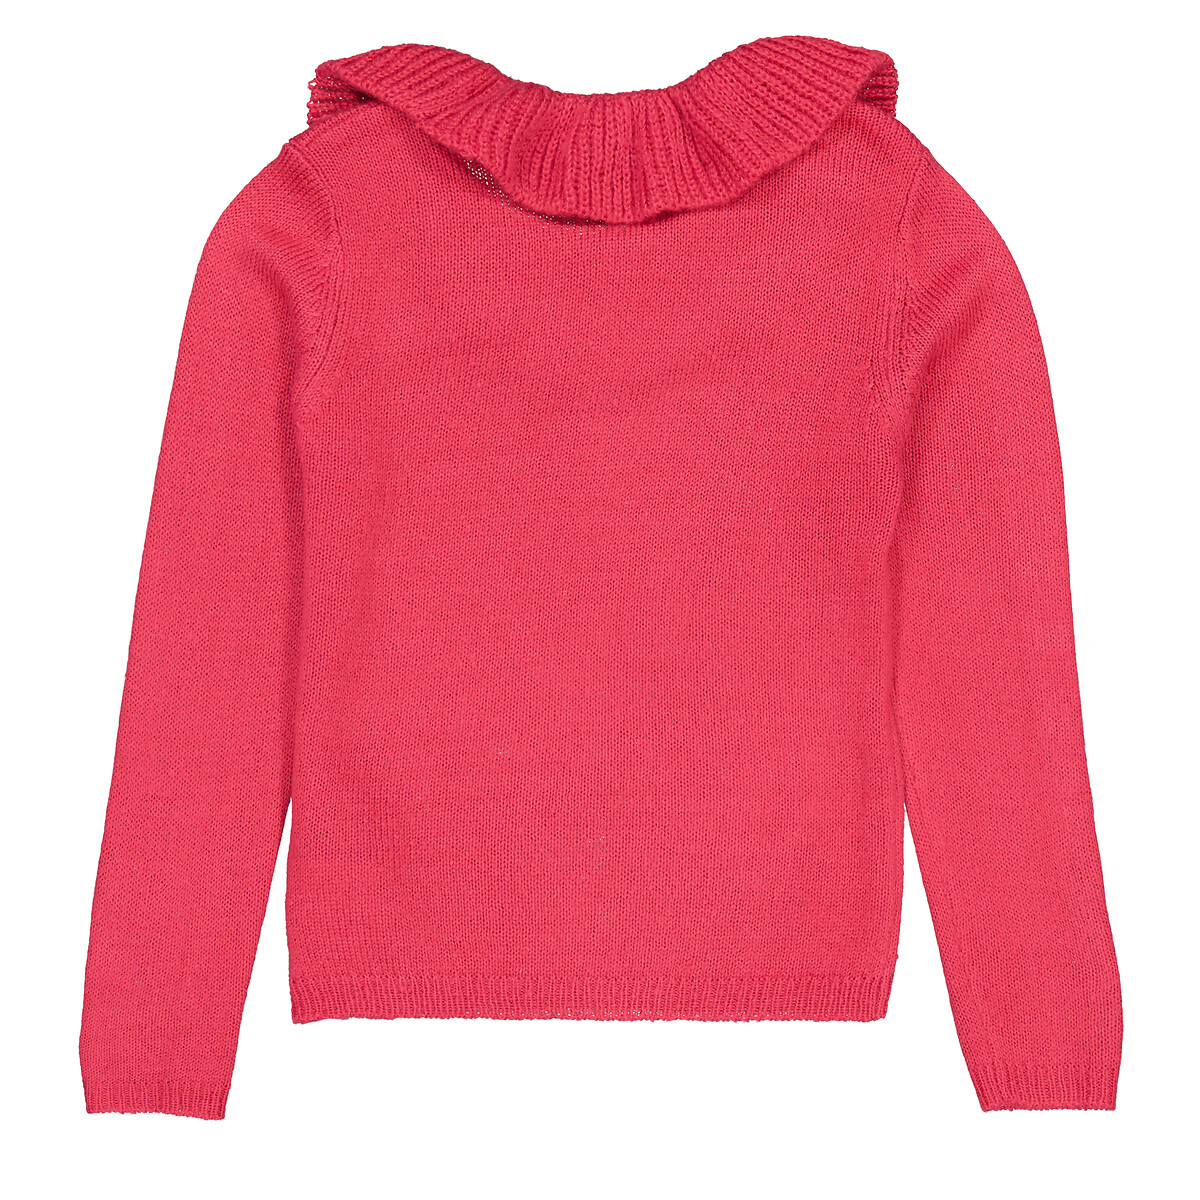 Пуловер С круглым вырезом с воланами из тонкого трикотажа 3-12 лет 12 лет -150 см розовый LaRedoute, размер 12 лет -150 см - фото 4